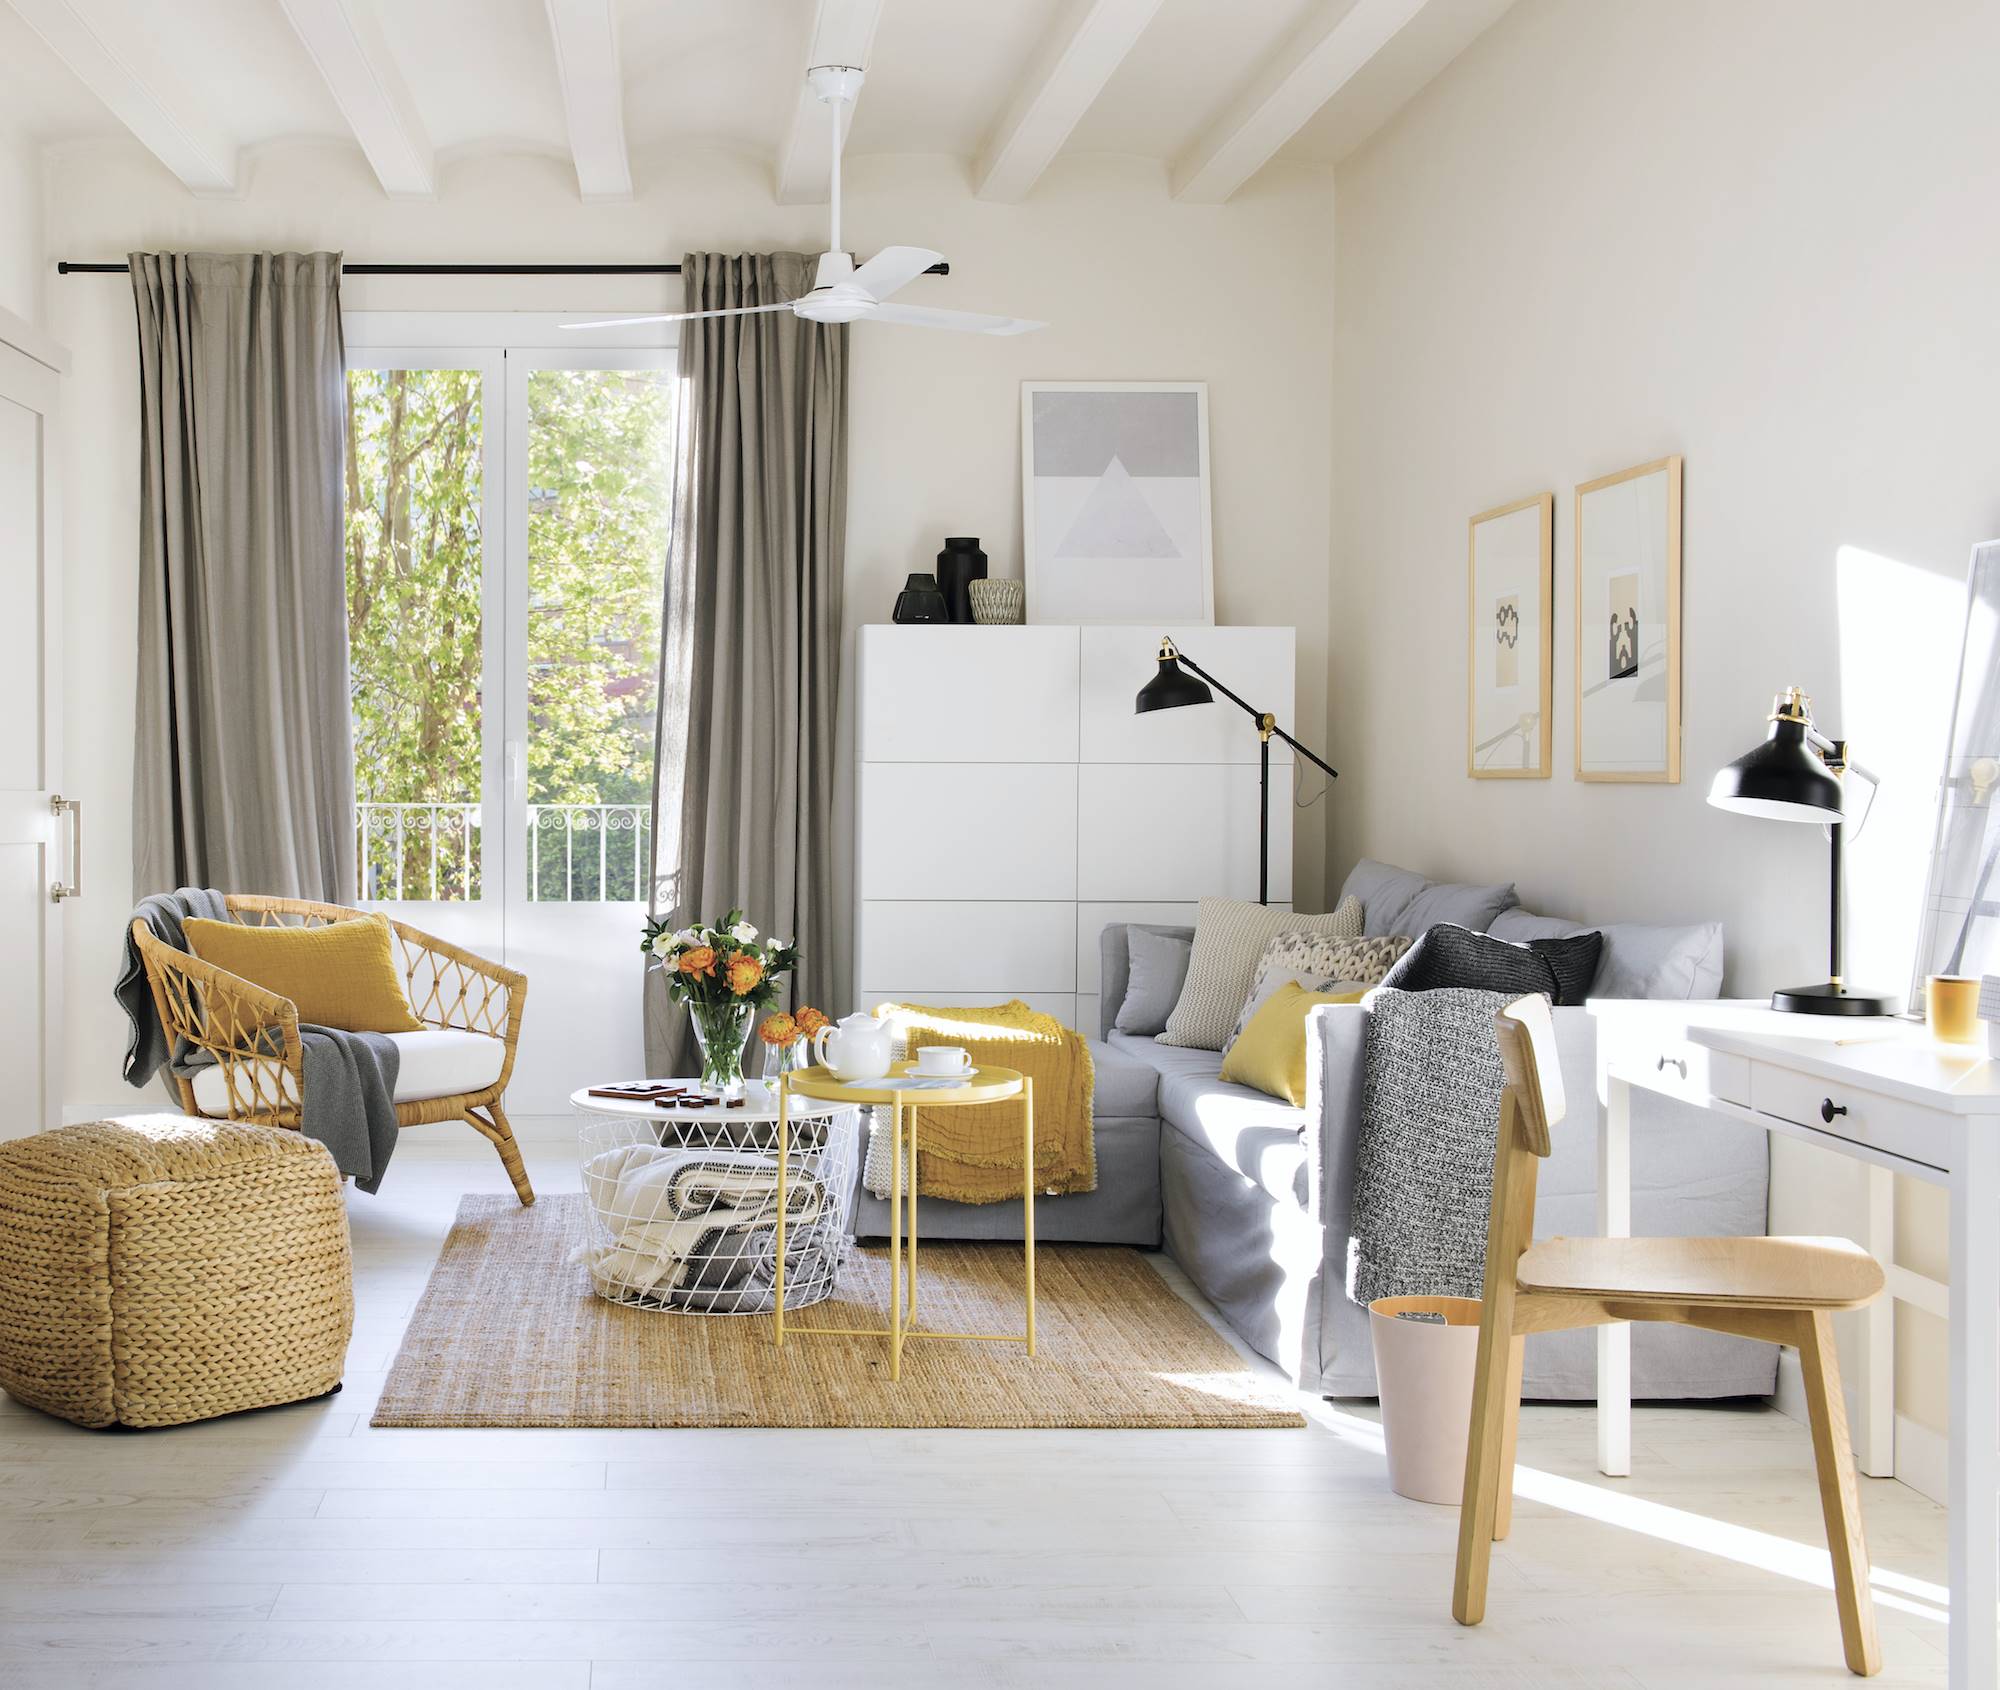 Sofá moderno con muebles de Ikea en blanco y amarillo.